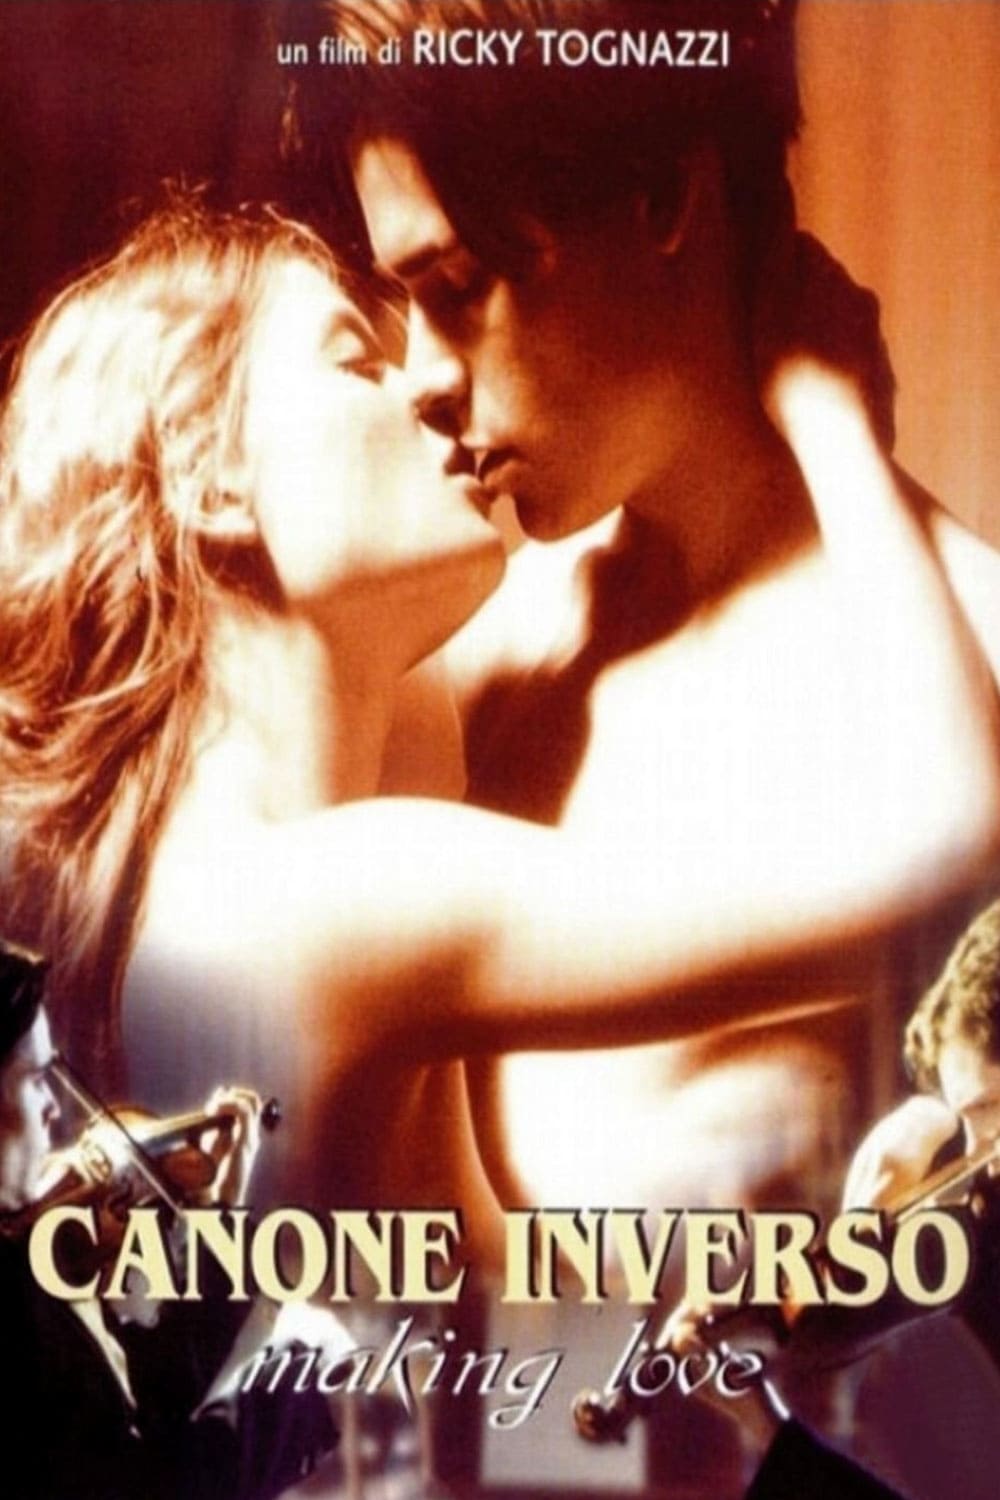 Canone inverso - Making Love film